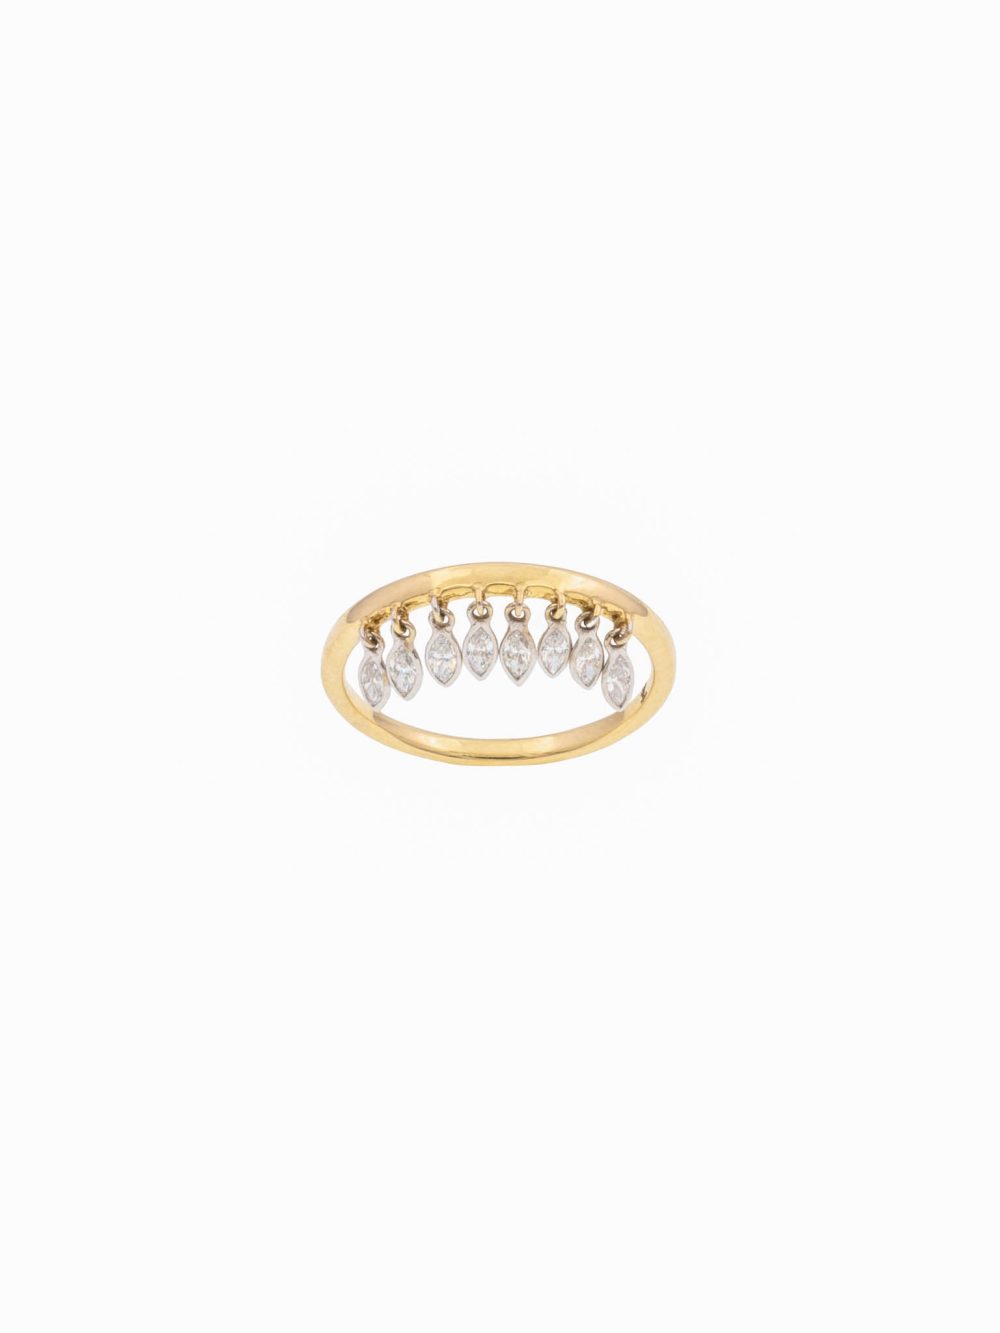 ring-pendant-diamonds-gigi-luj-paris-jewelery-4